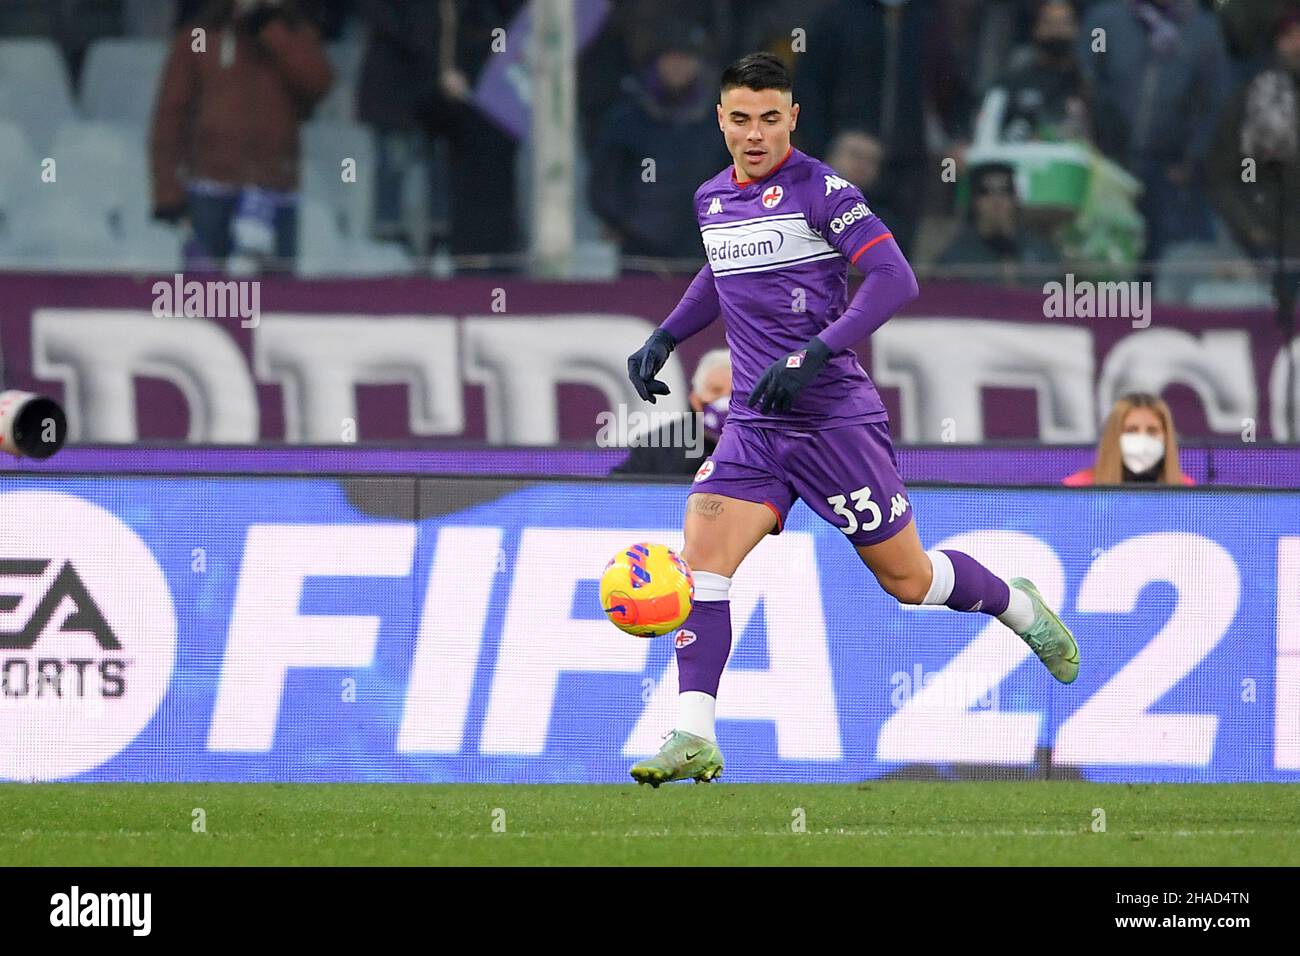 FIRENZE, ITALIA - DICEMBRE 11: Riccardo Sottil di ACF Fiorentina in azione durante la Serie A match tra ACF Fiorentina e US Salernitana a Stadi Foto Stock